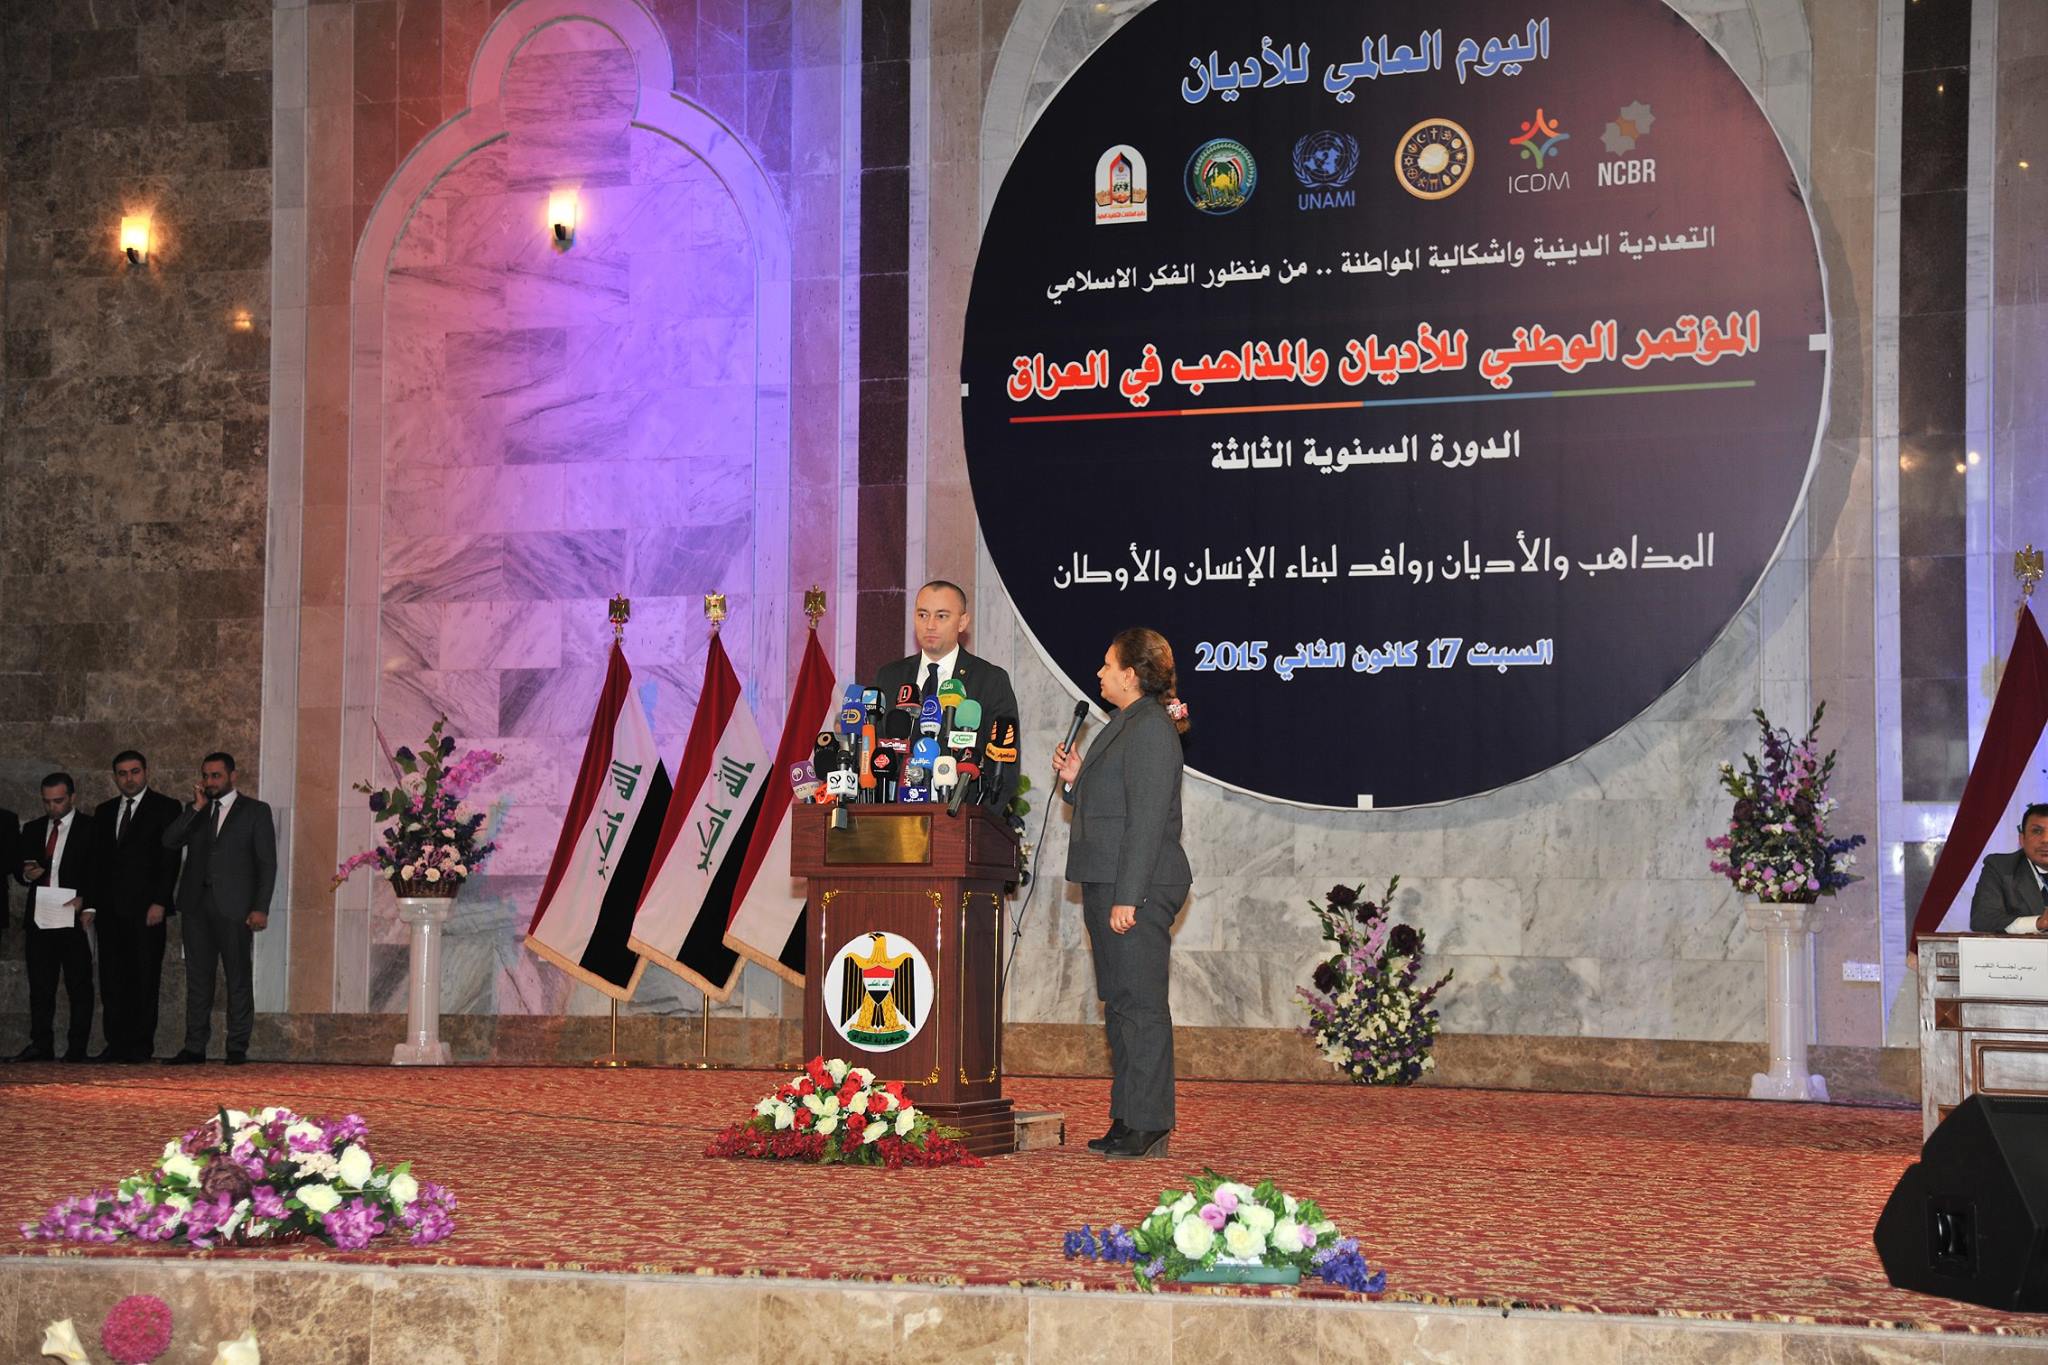 ديوان الوقف السني يحتضن المؤتمر الوطني للاديان والمذاهب في العراق بنسخته الثالثة (4)